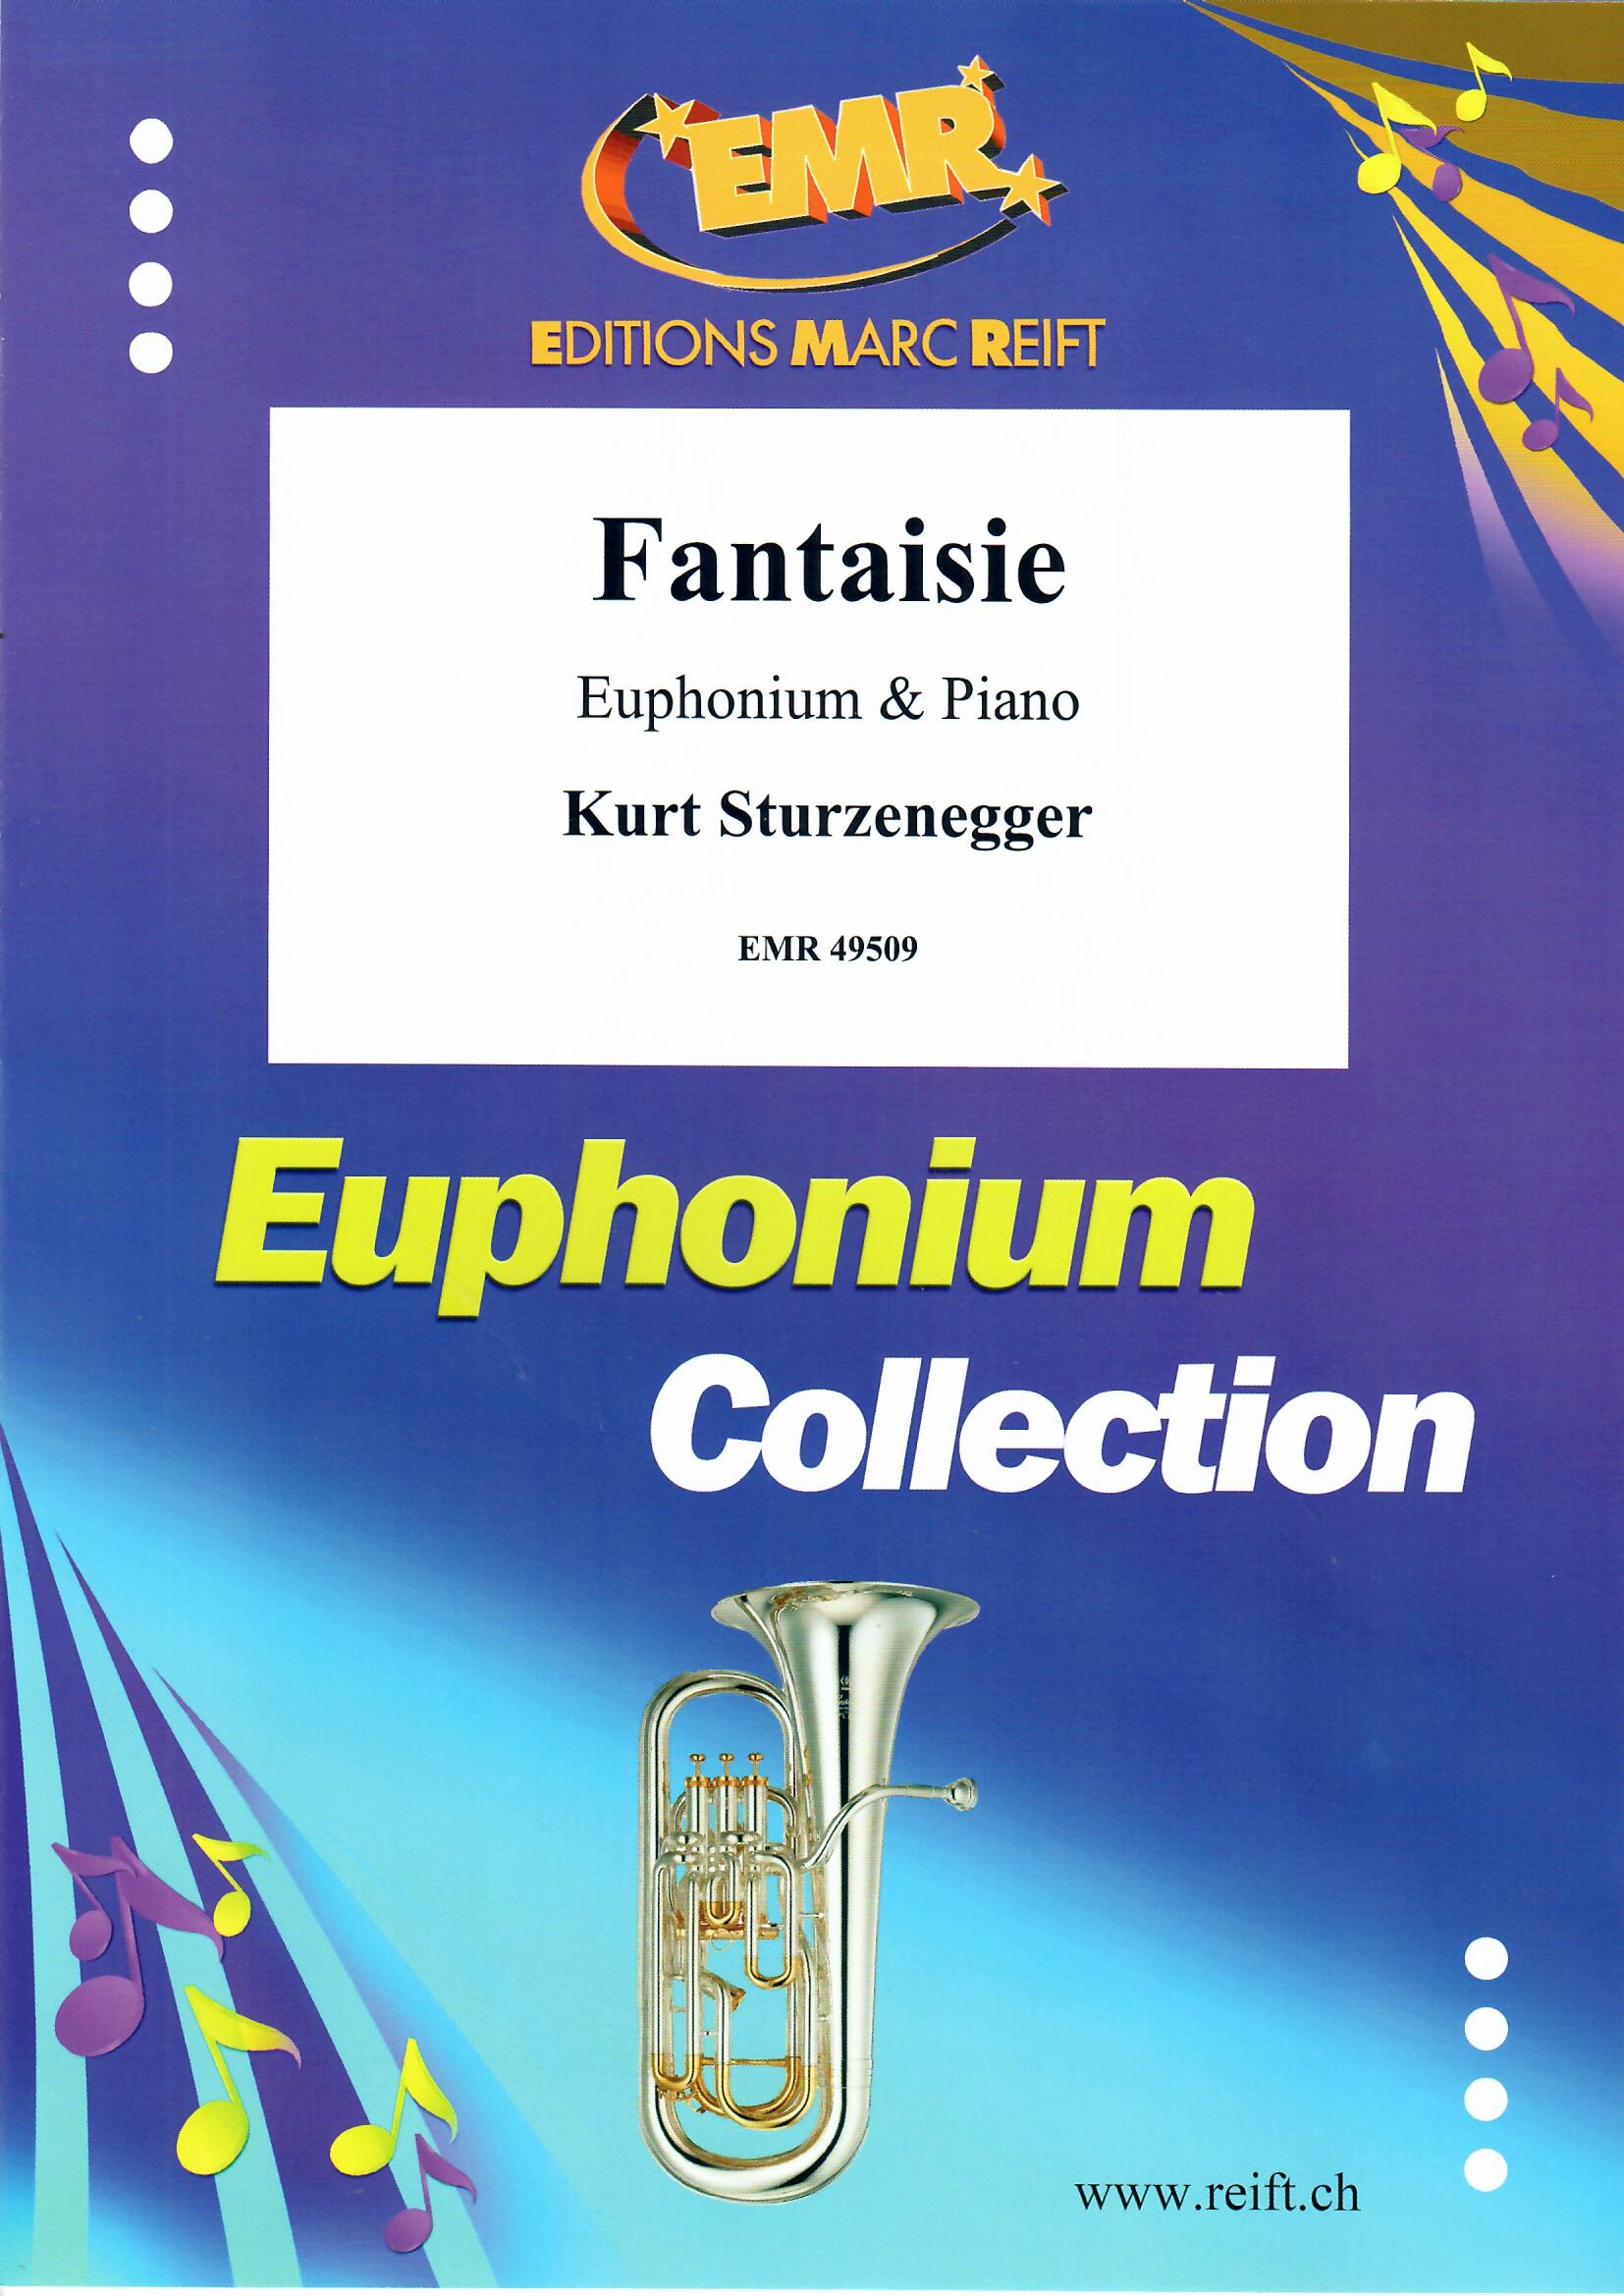 FANTAISIE - Euphonium & Piano